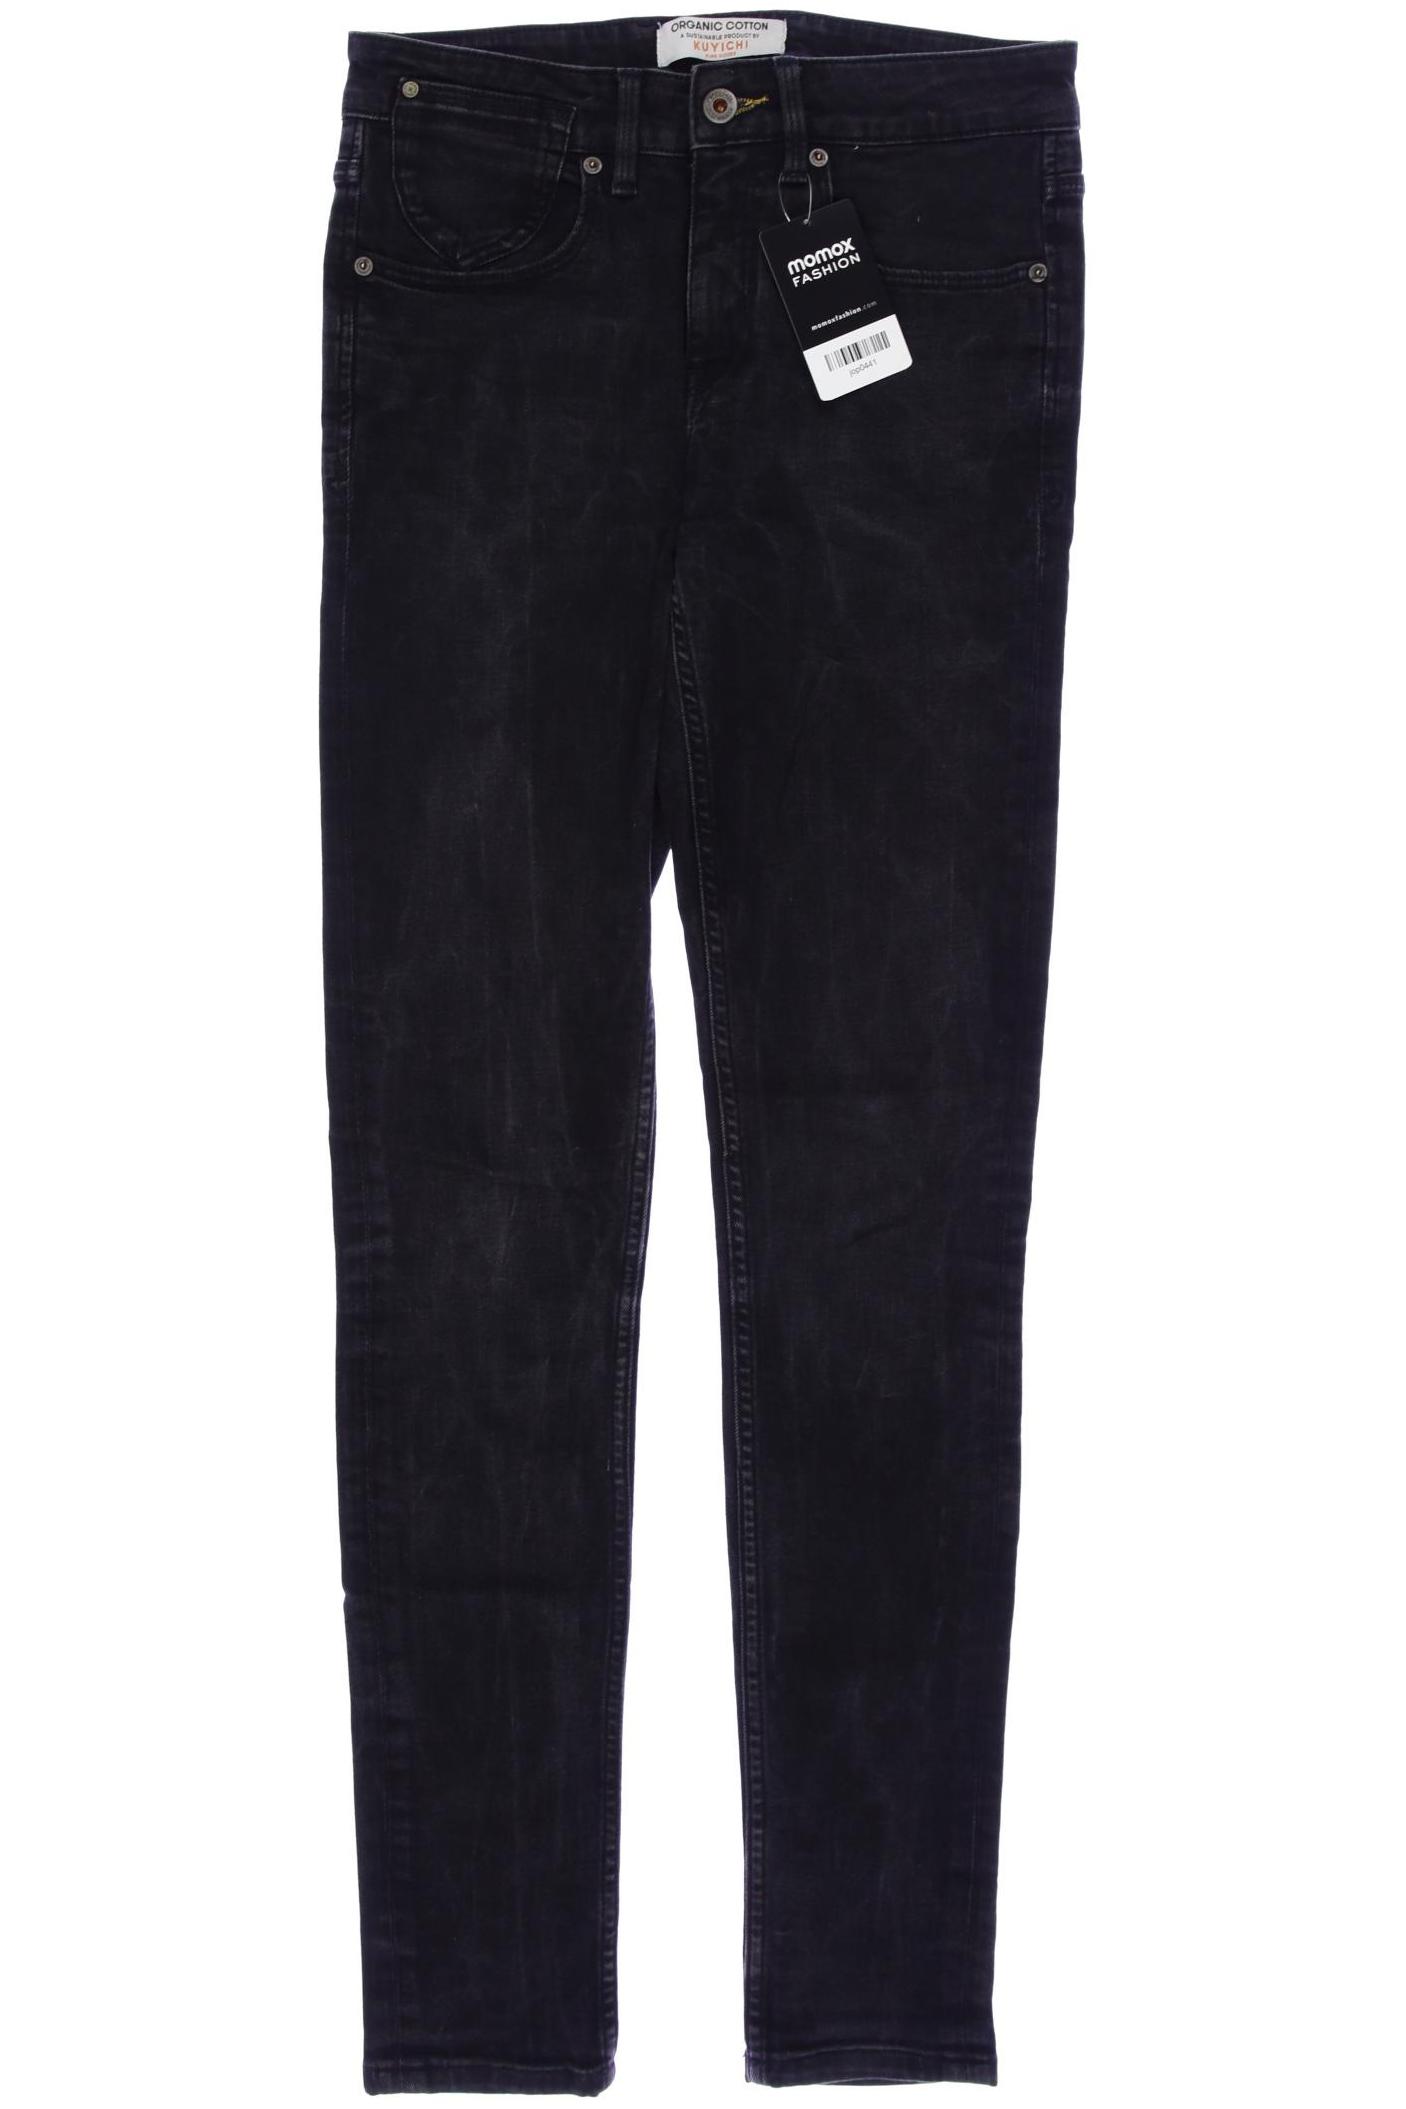 Kuyichi Damen Jeans, schwarz von Kuyichi